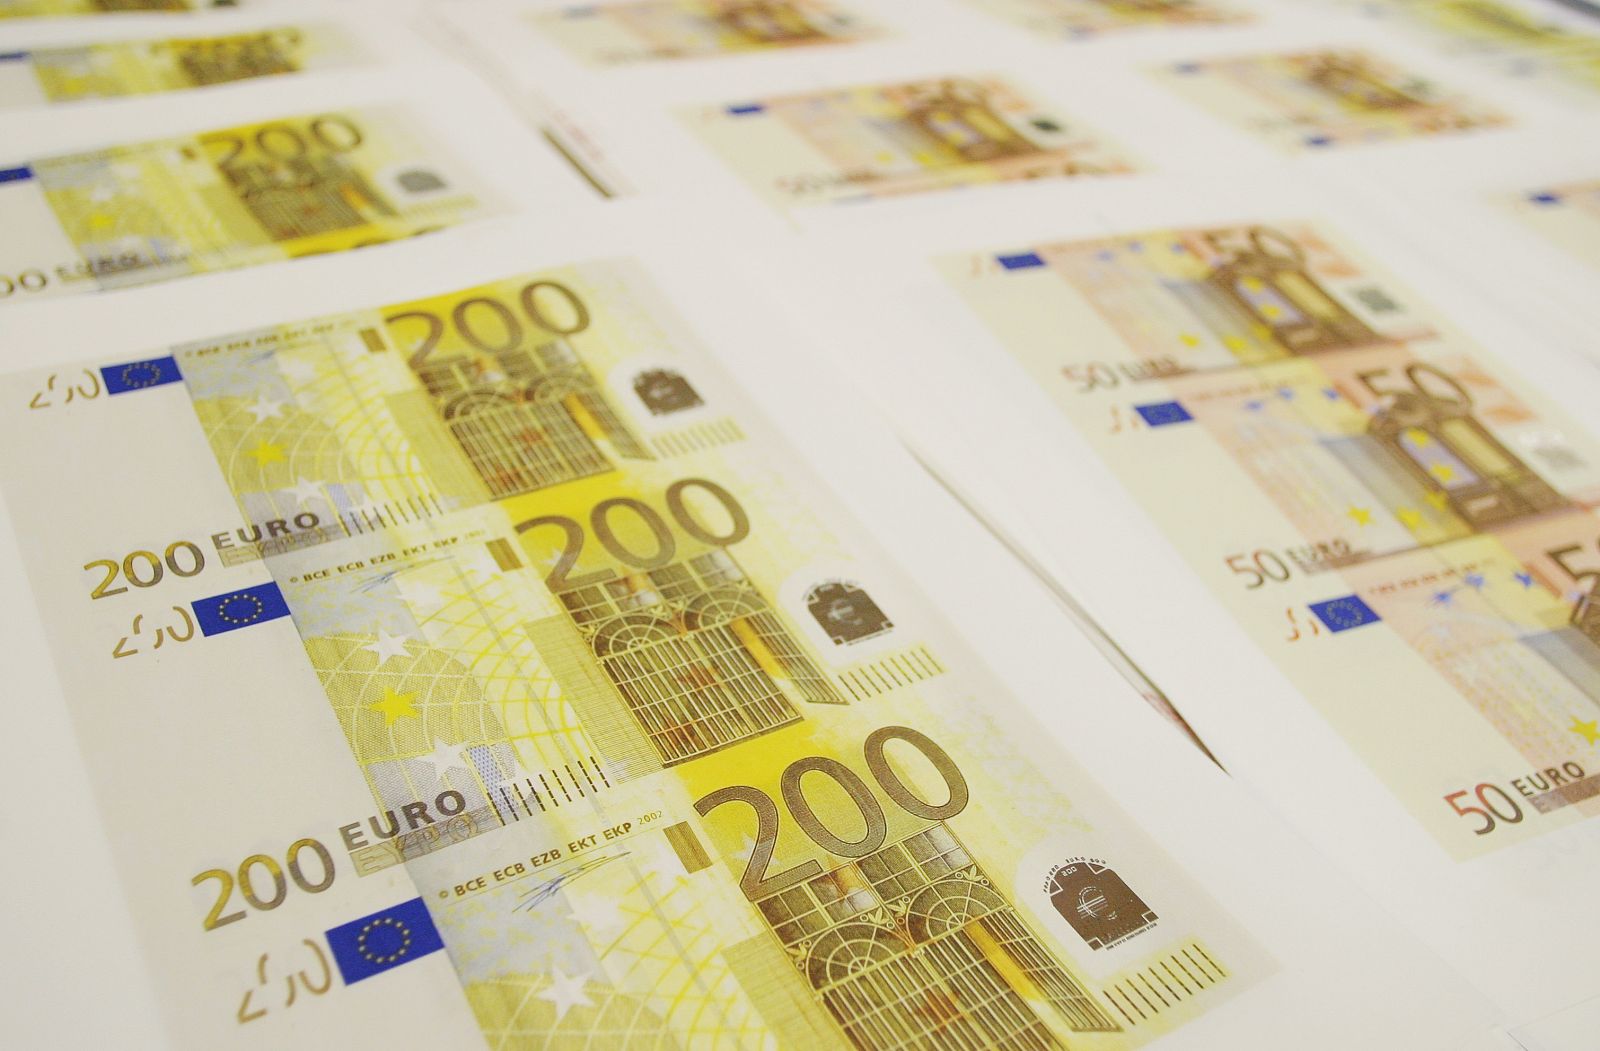 Impresión de billetes de 200 euros